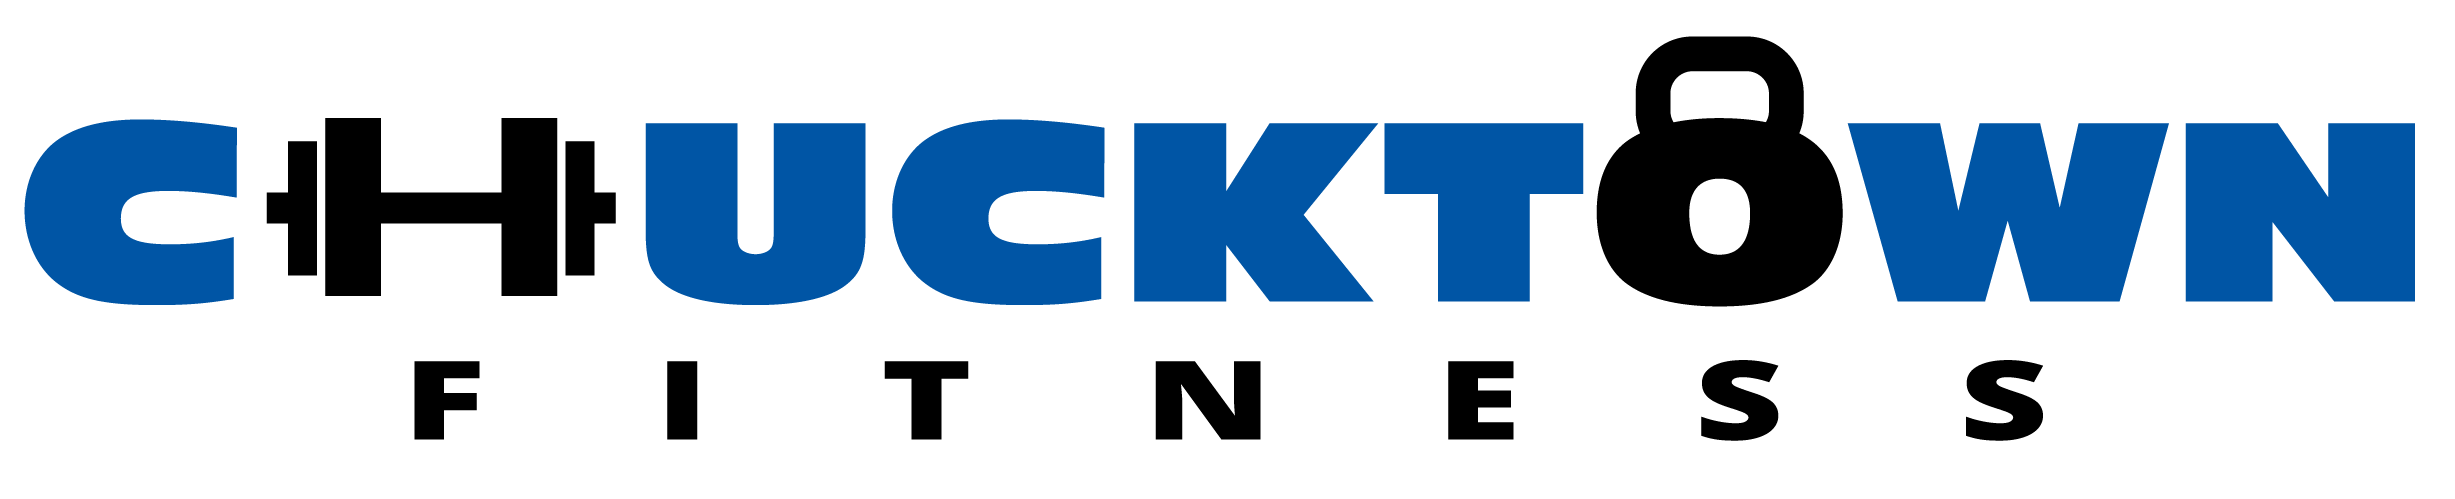 Chucktown Fitness LLC Logo